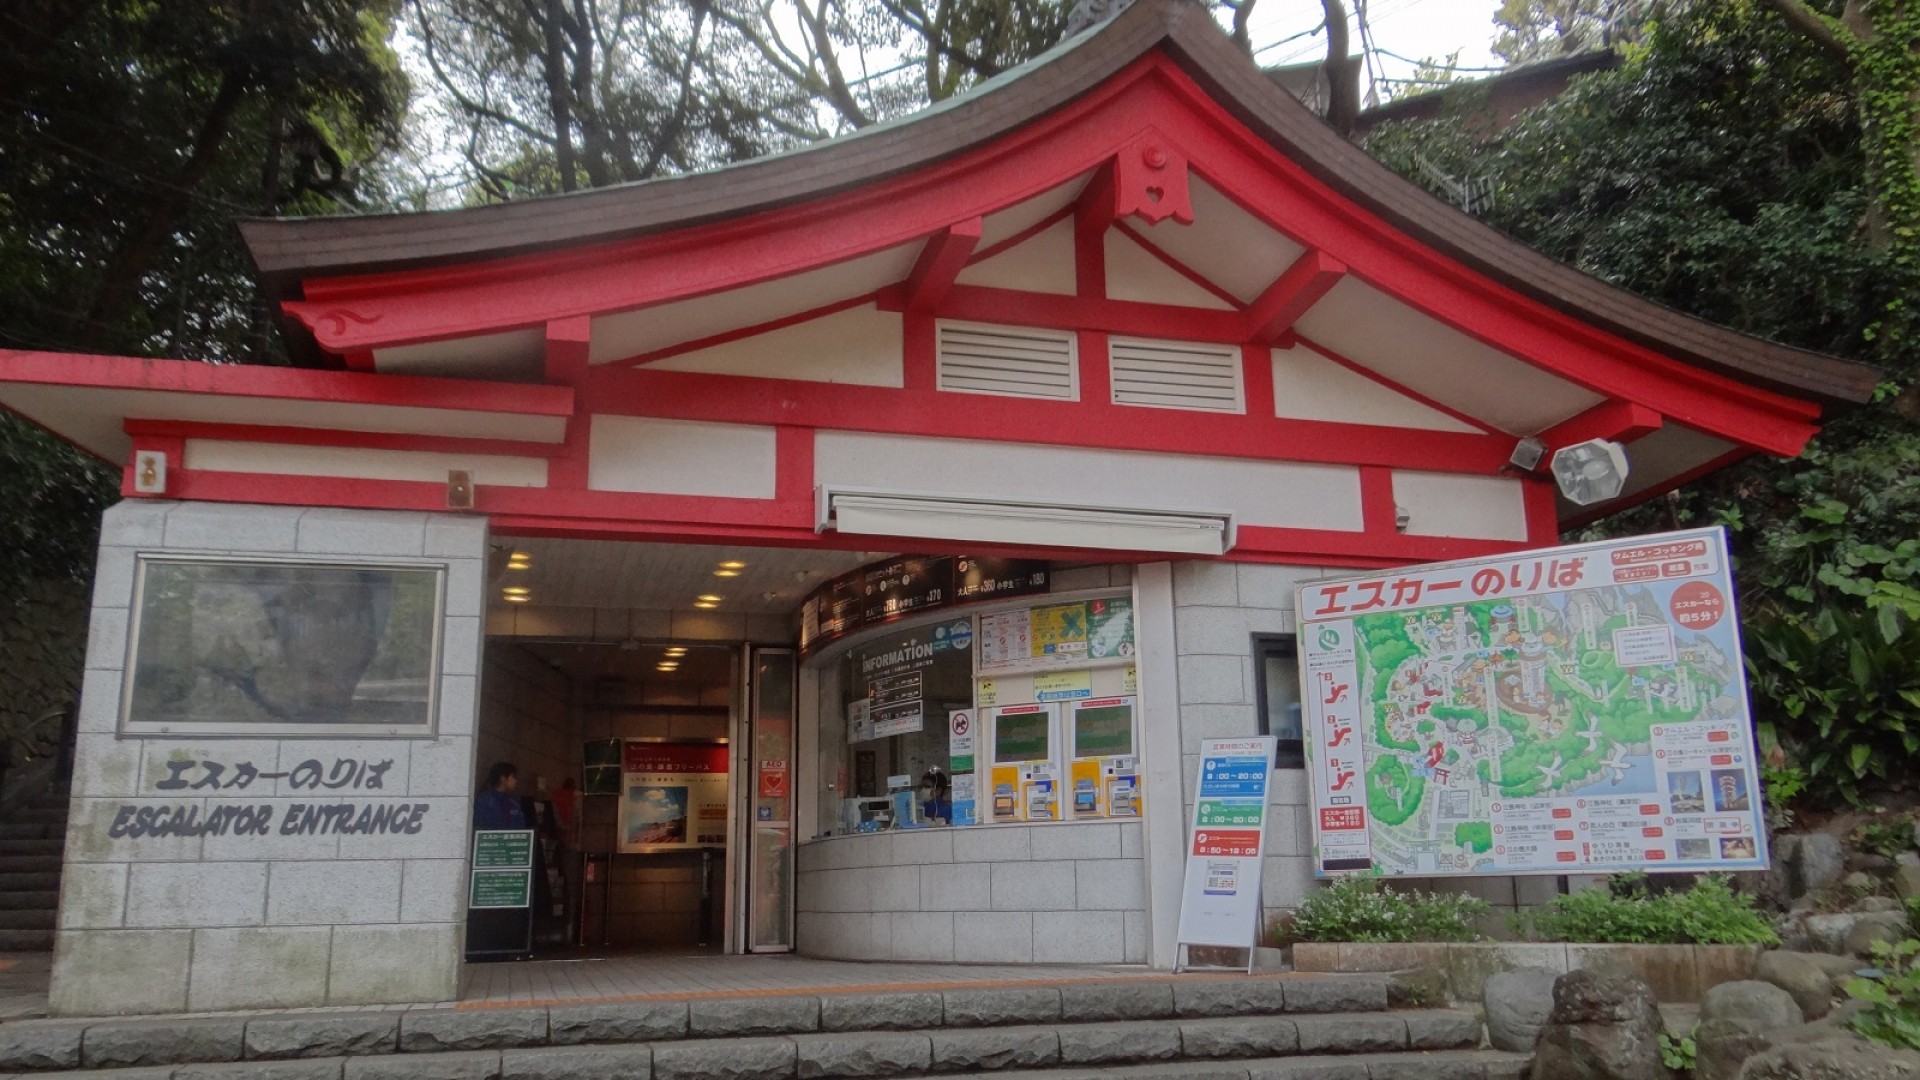 Enoshima Escar